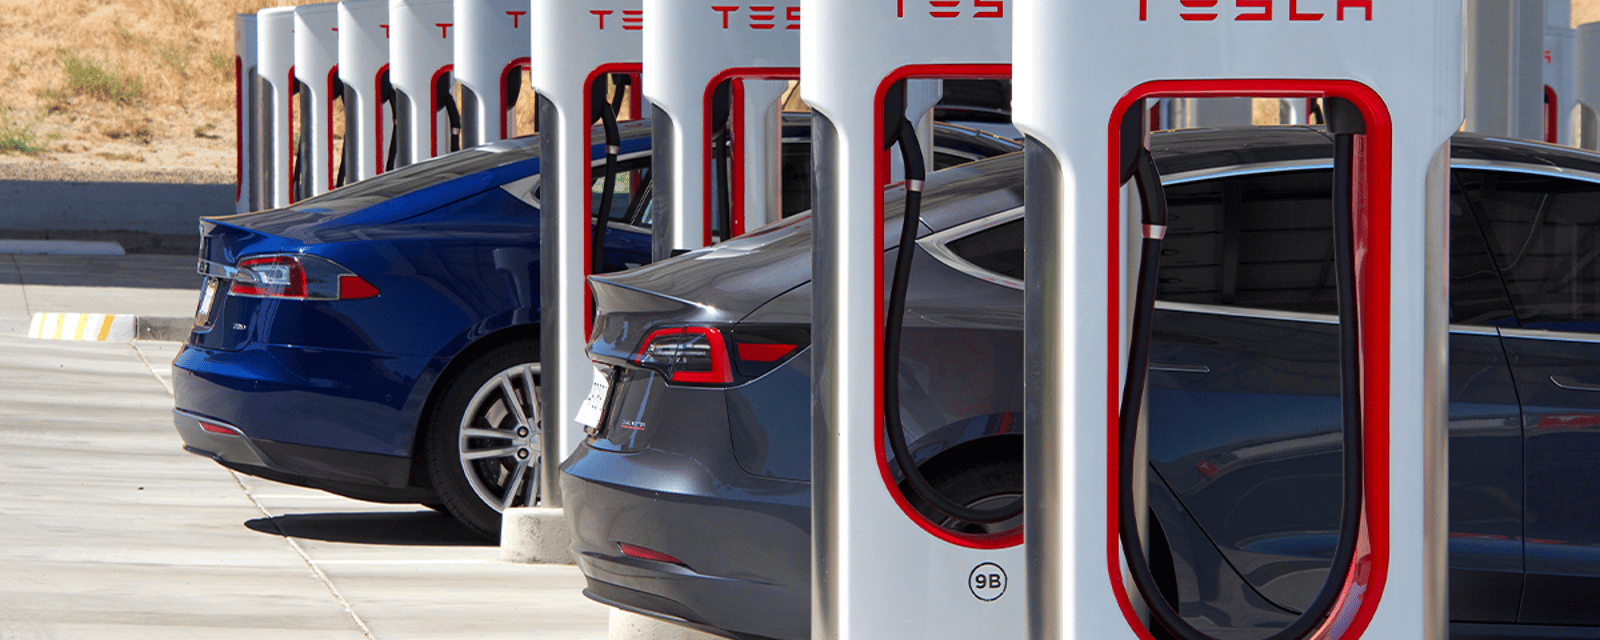 Les experts s'attendent à une année record pour les ventes de voitures électriques